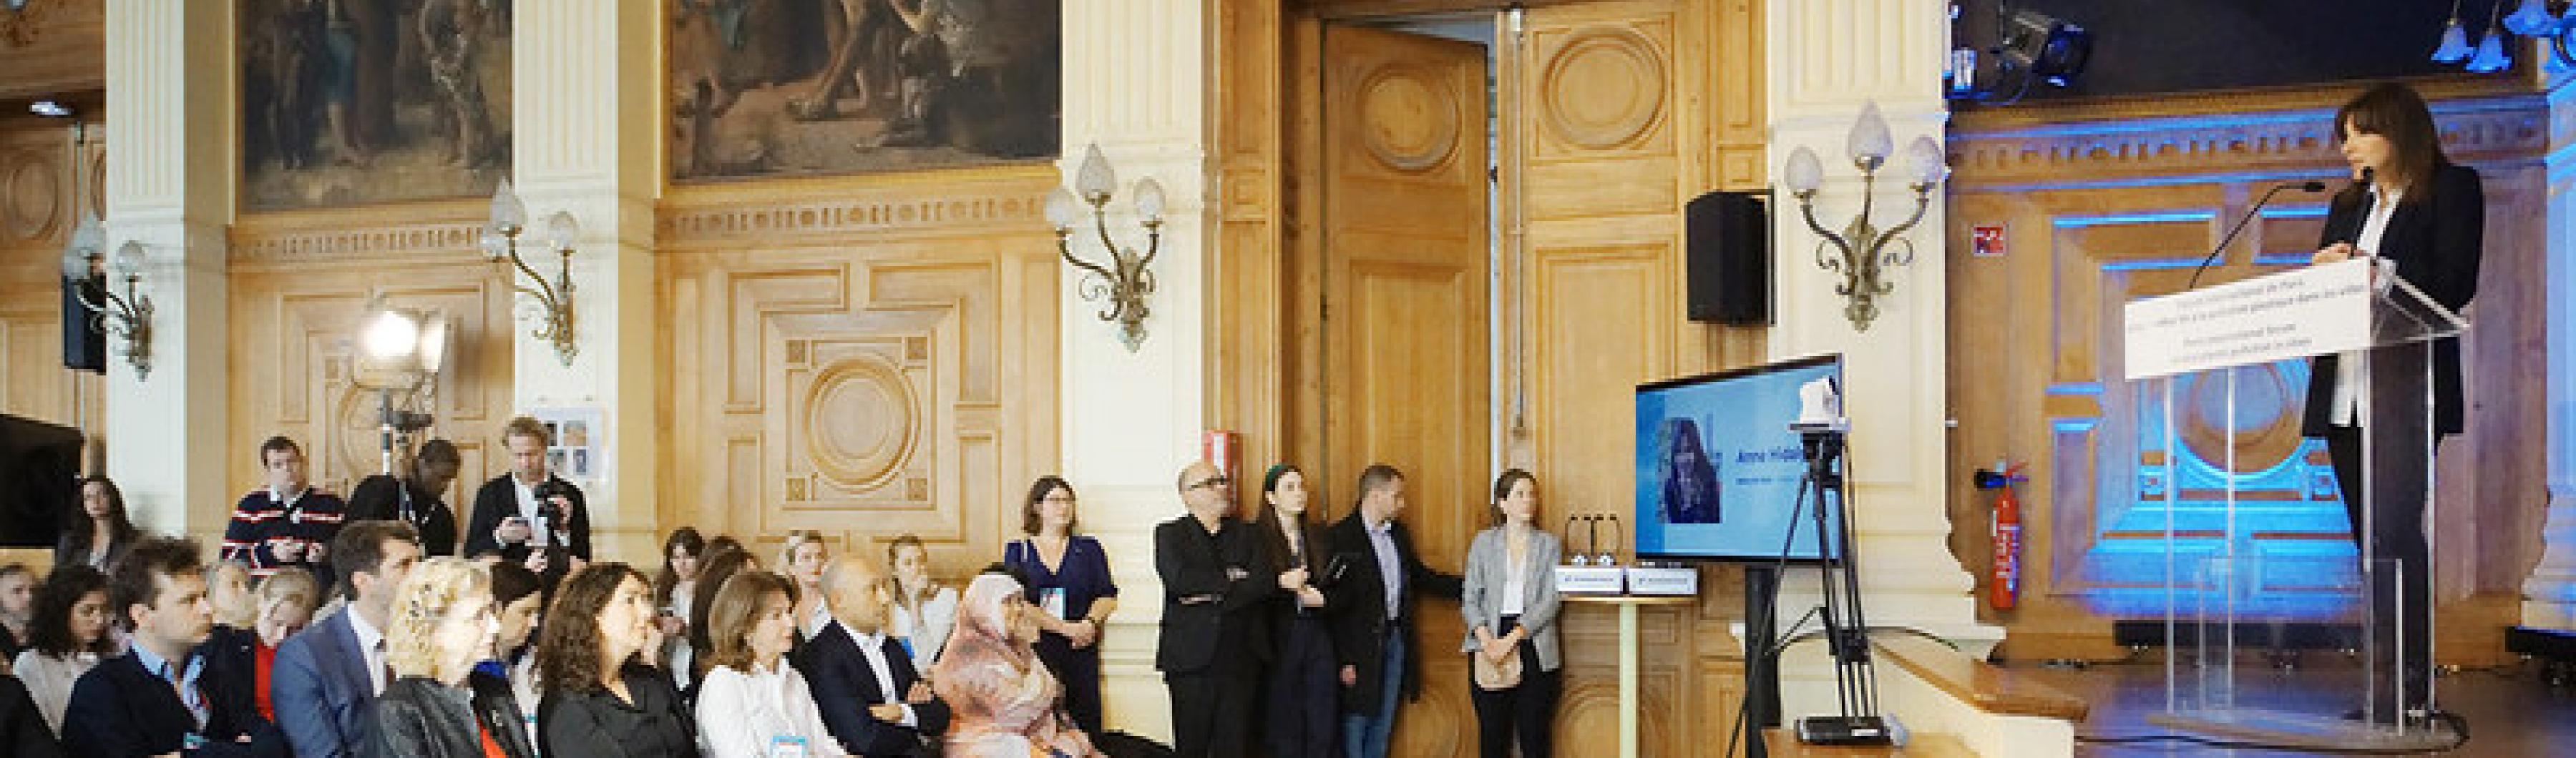 Walikota Paris Anne Hidalgo berpidato di hadapan para hadirin di Forum Internasional Paris untuk Mengakhiri Polusi Plastik di Perkotaan